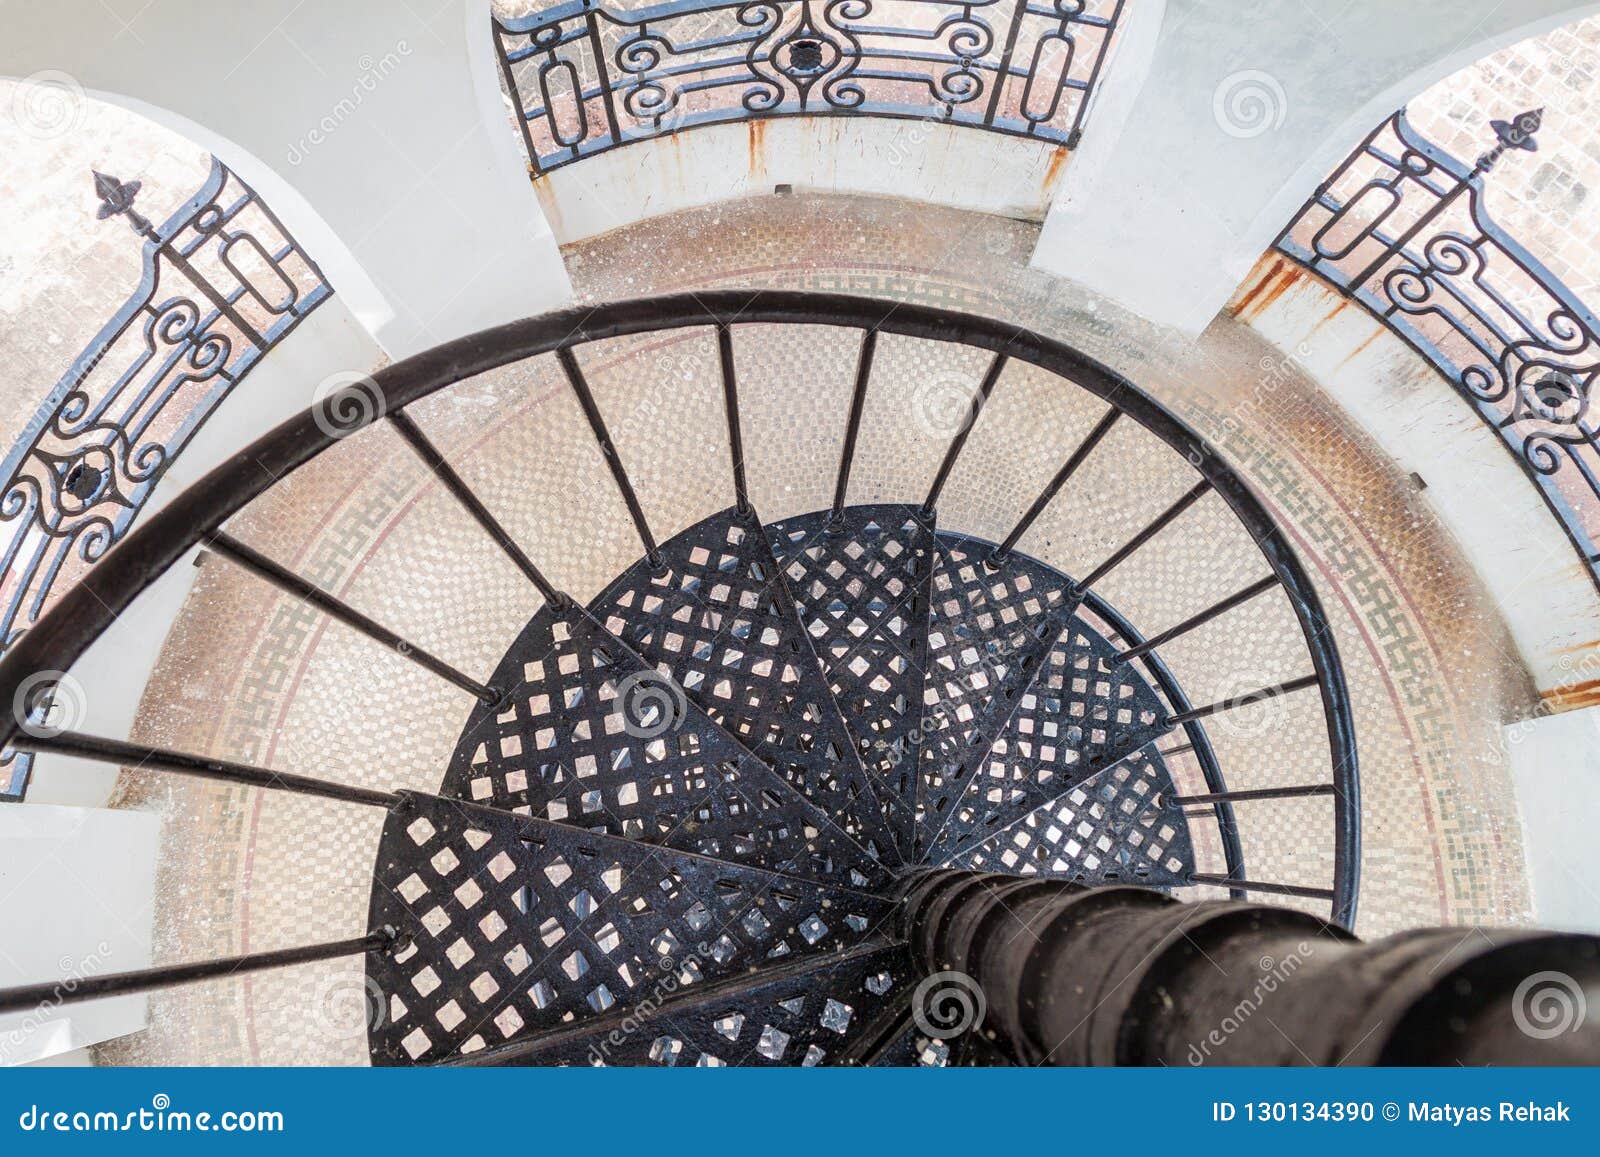 iron stairs in the tower of casa de la cultura benjamin duarte in cienfuegos, cub